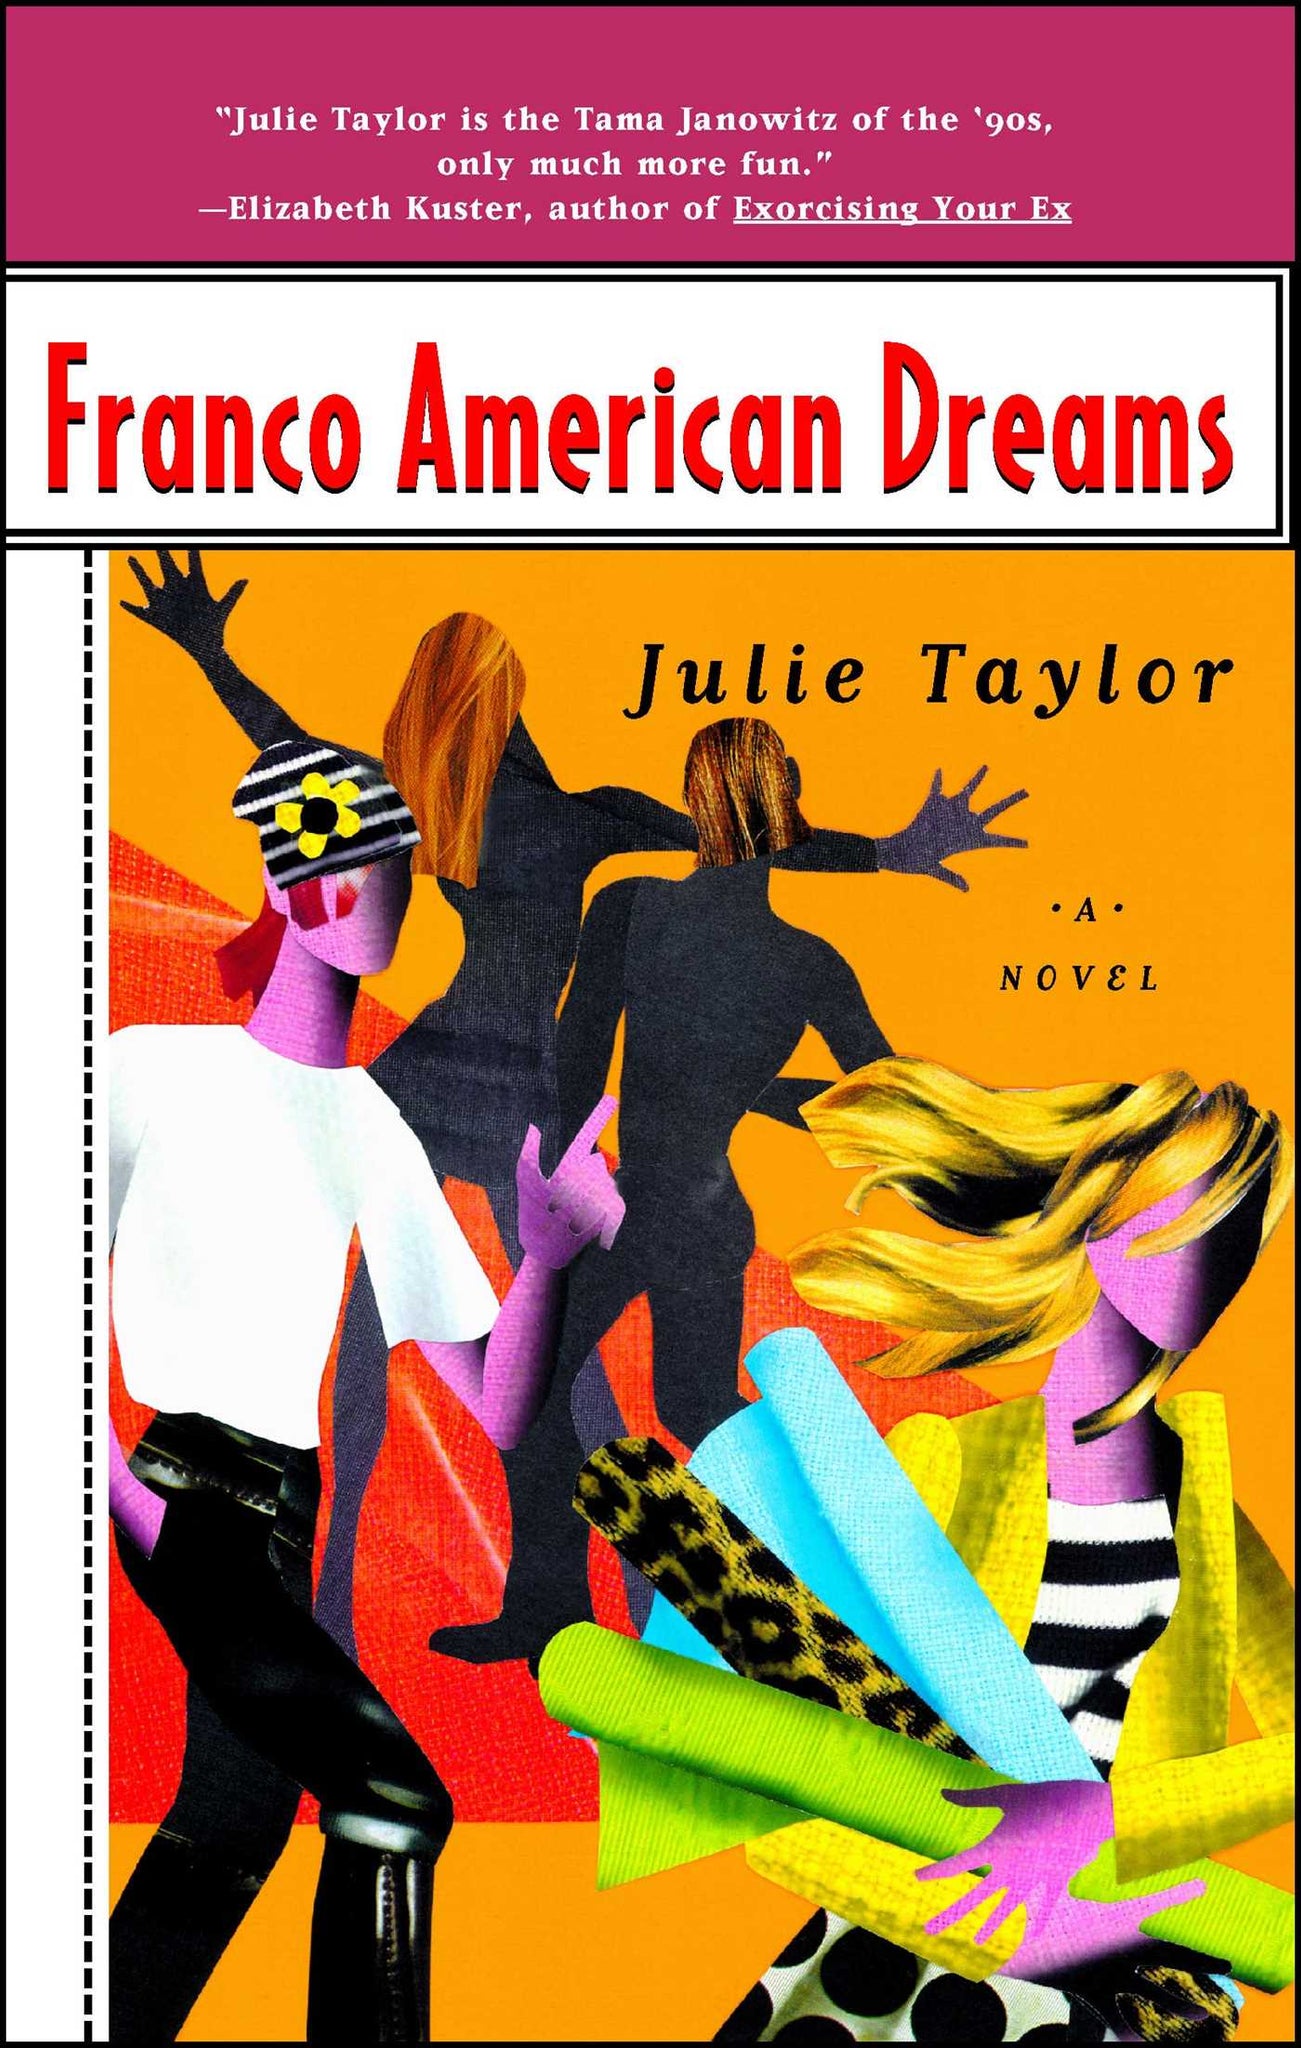 Franco American Dreams